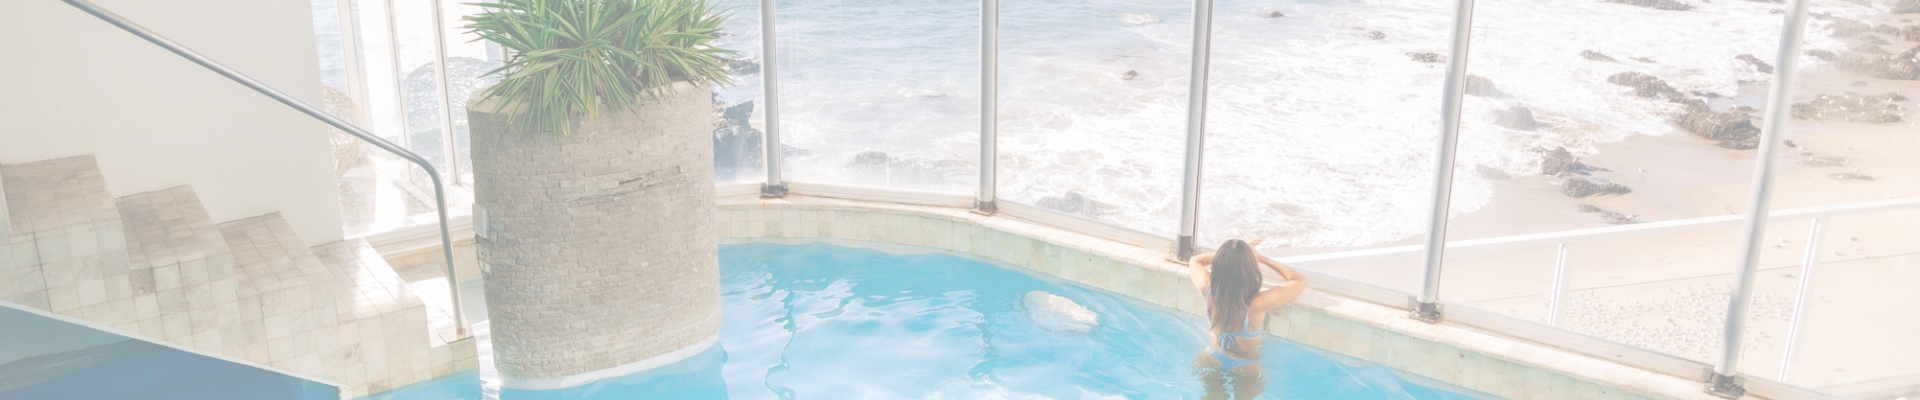 piscina climatizada spa